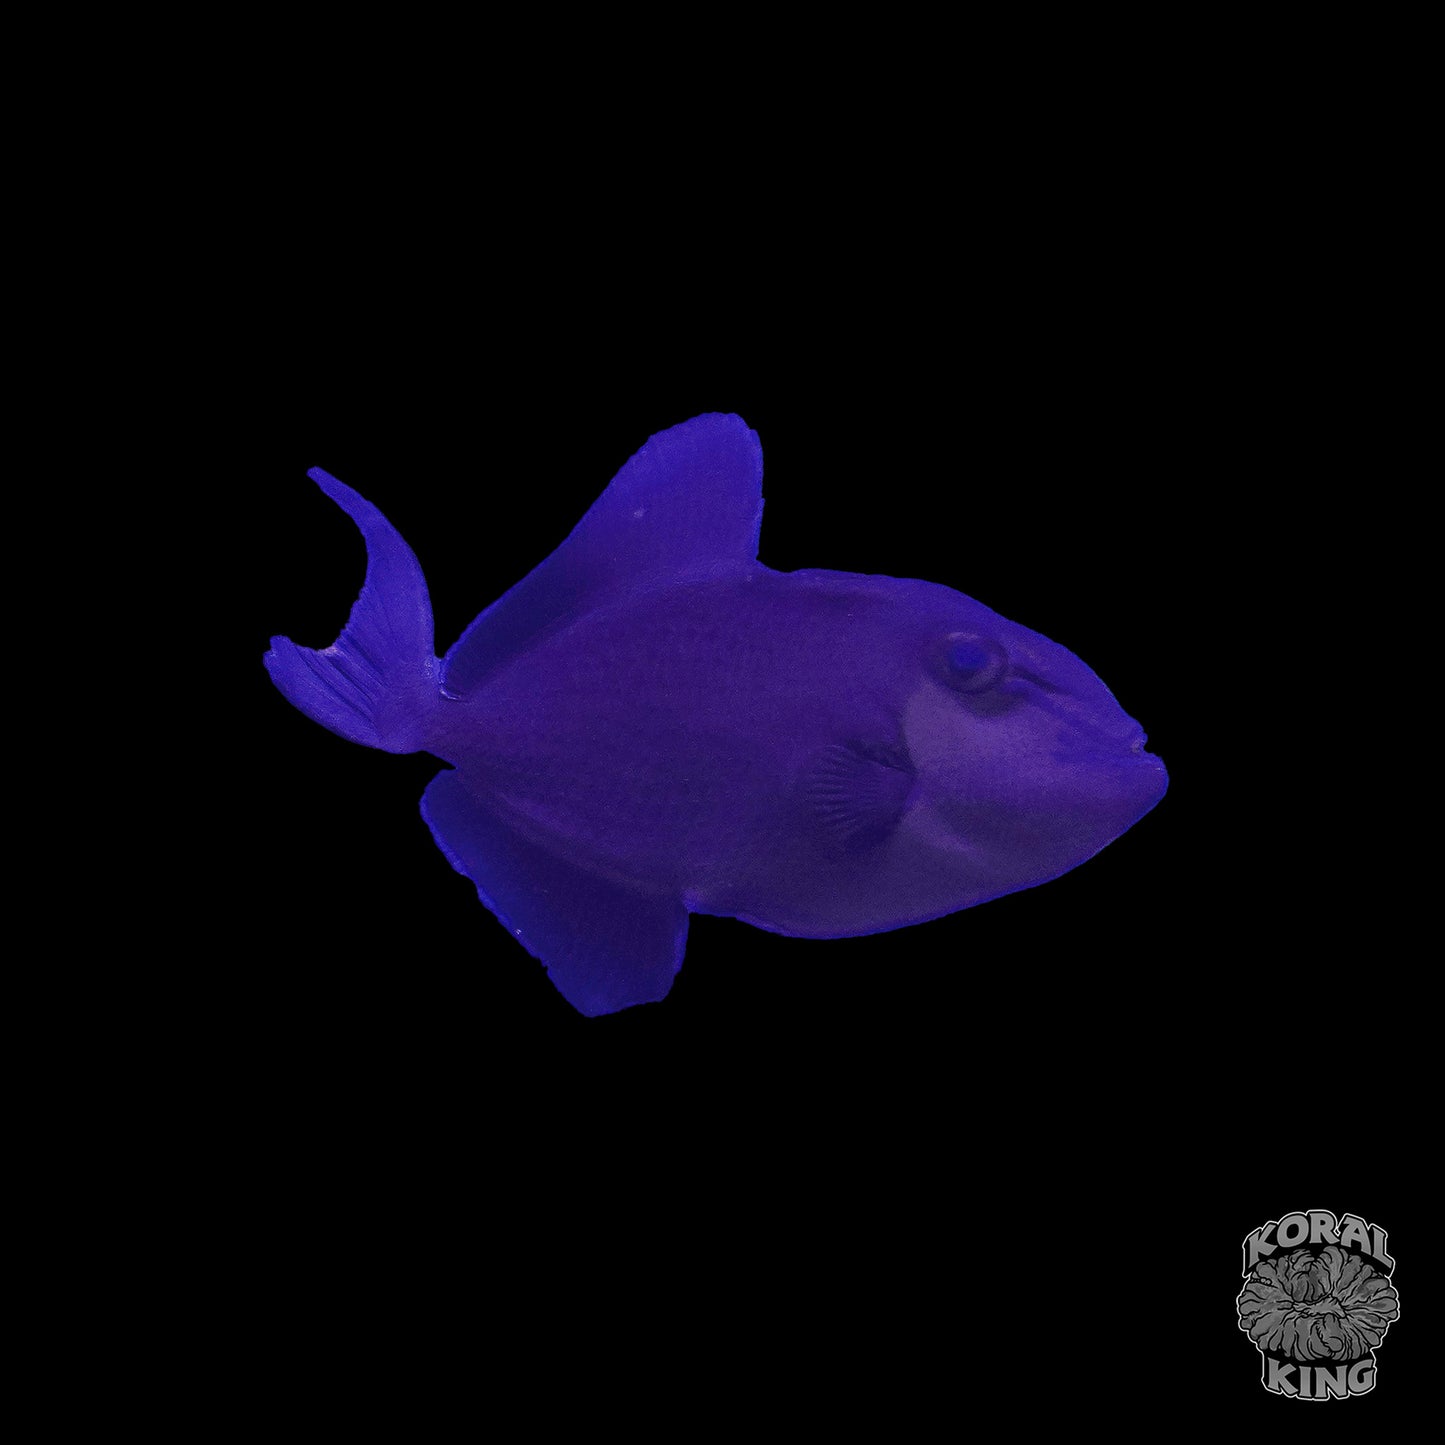 Blue Niger Trigger - Koral King